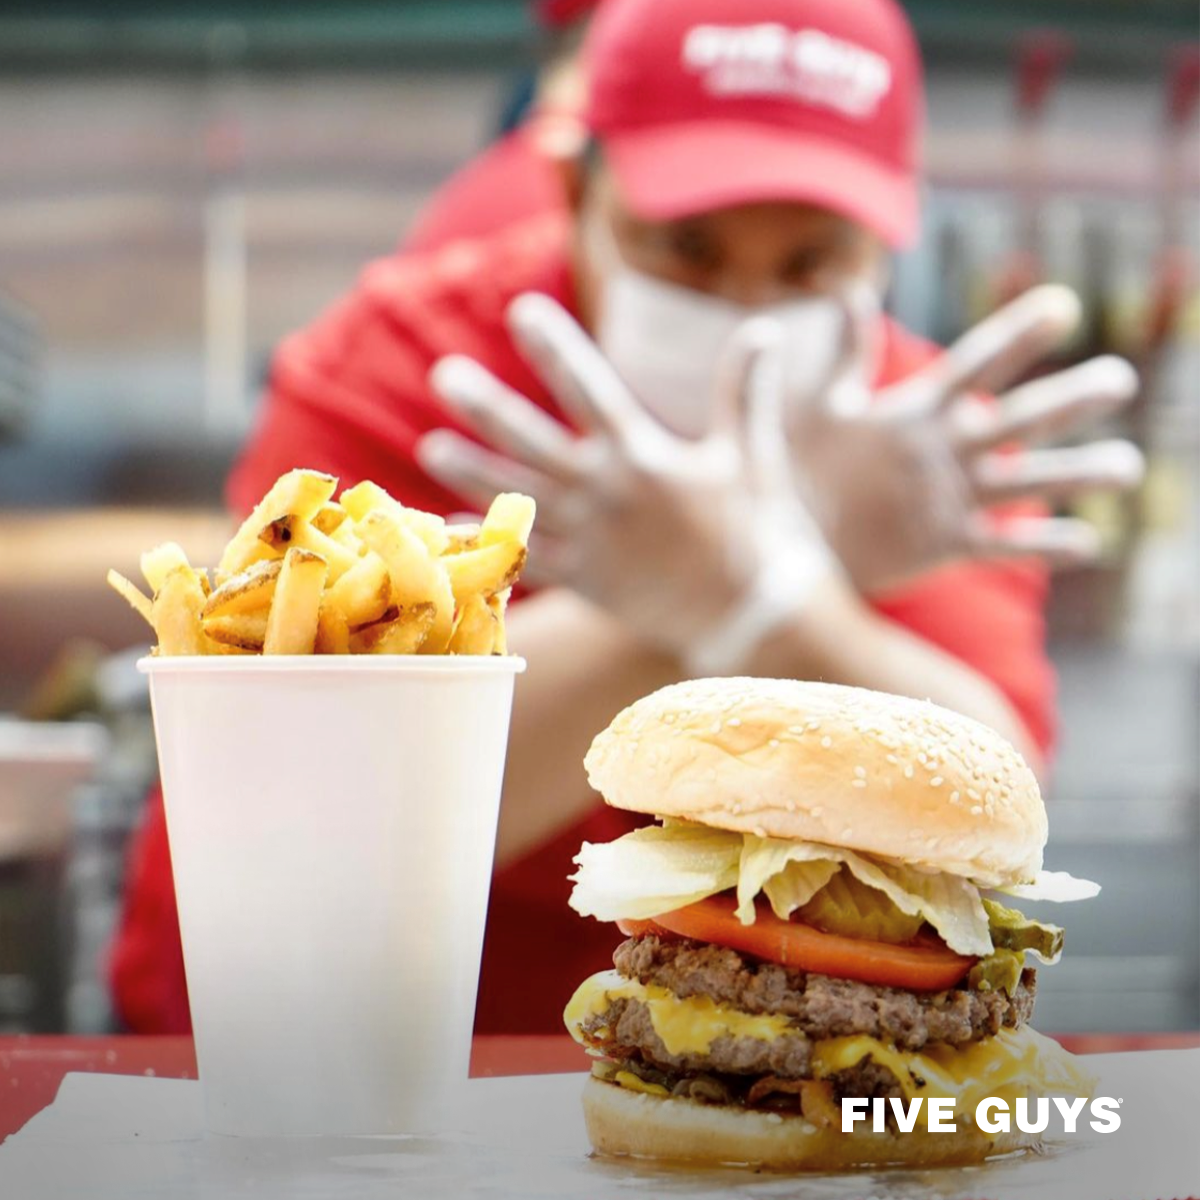 המבורגר עשוי באיכות של המותג Five guys